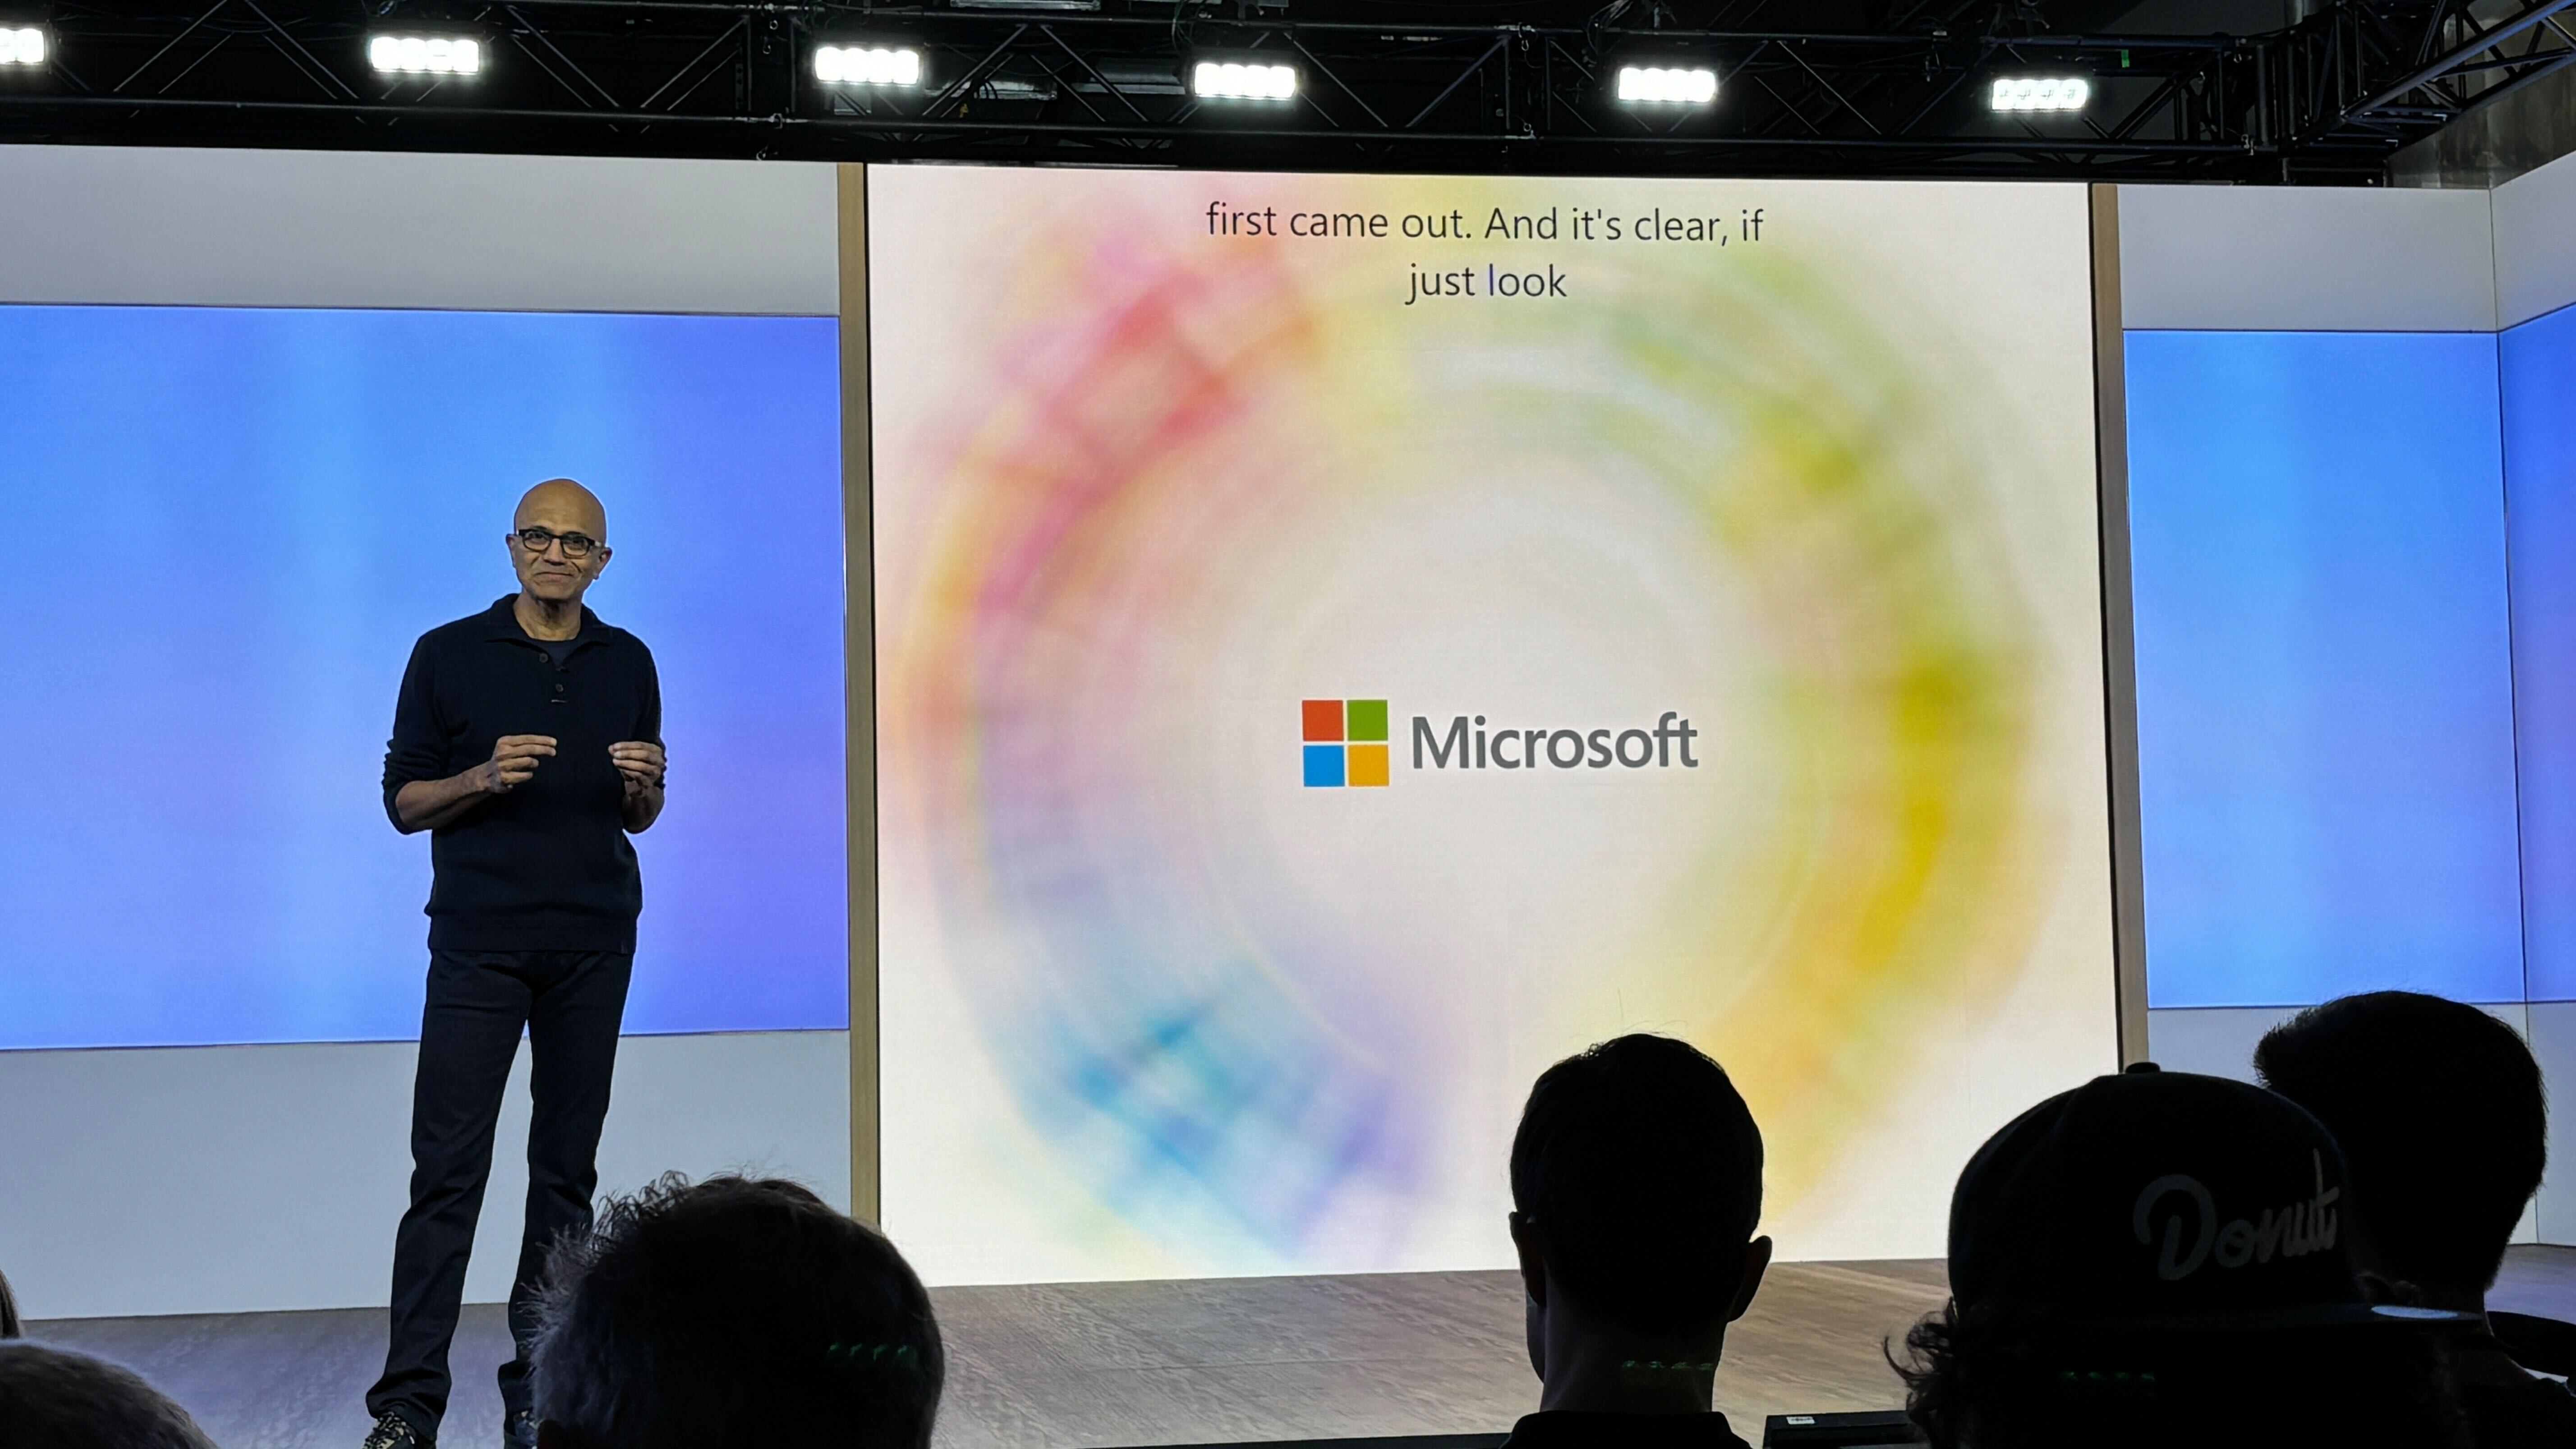  Microsoft a discrètement annoncé deux produits que les pros vont adorer 